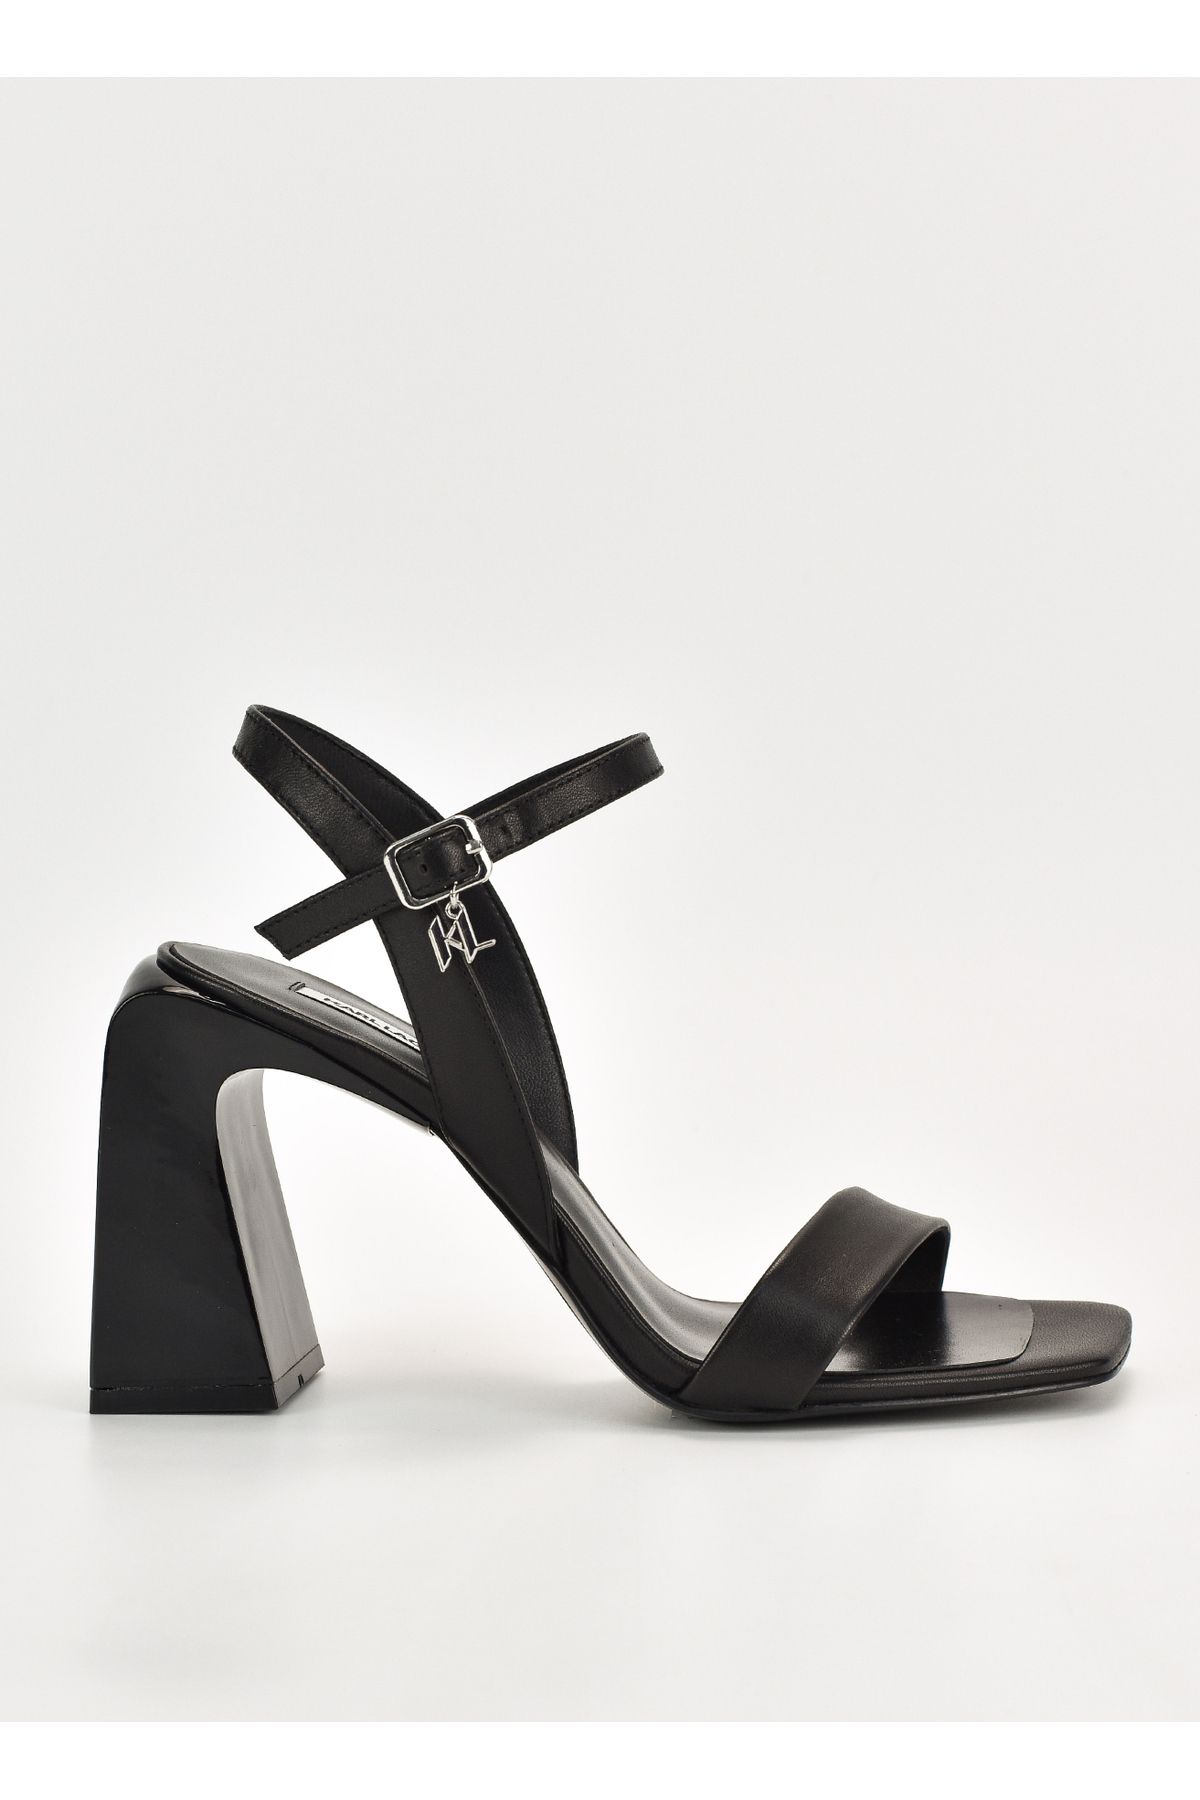 Karl Lagerfeld Deri Siyah Kadın Topuklu Ayakkabı KL33124 000